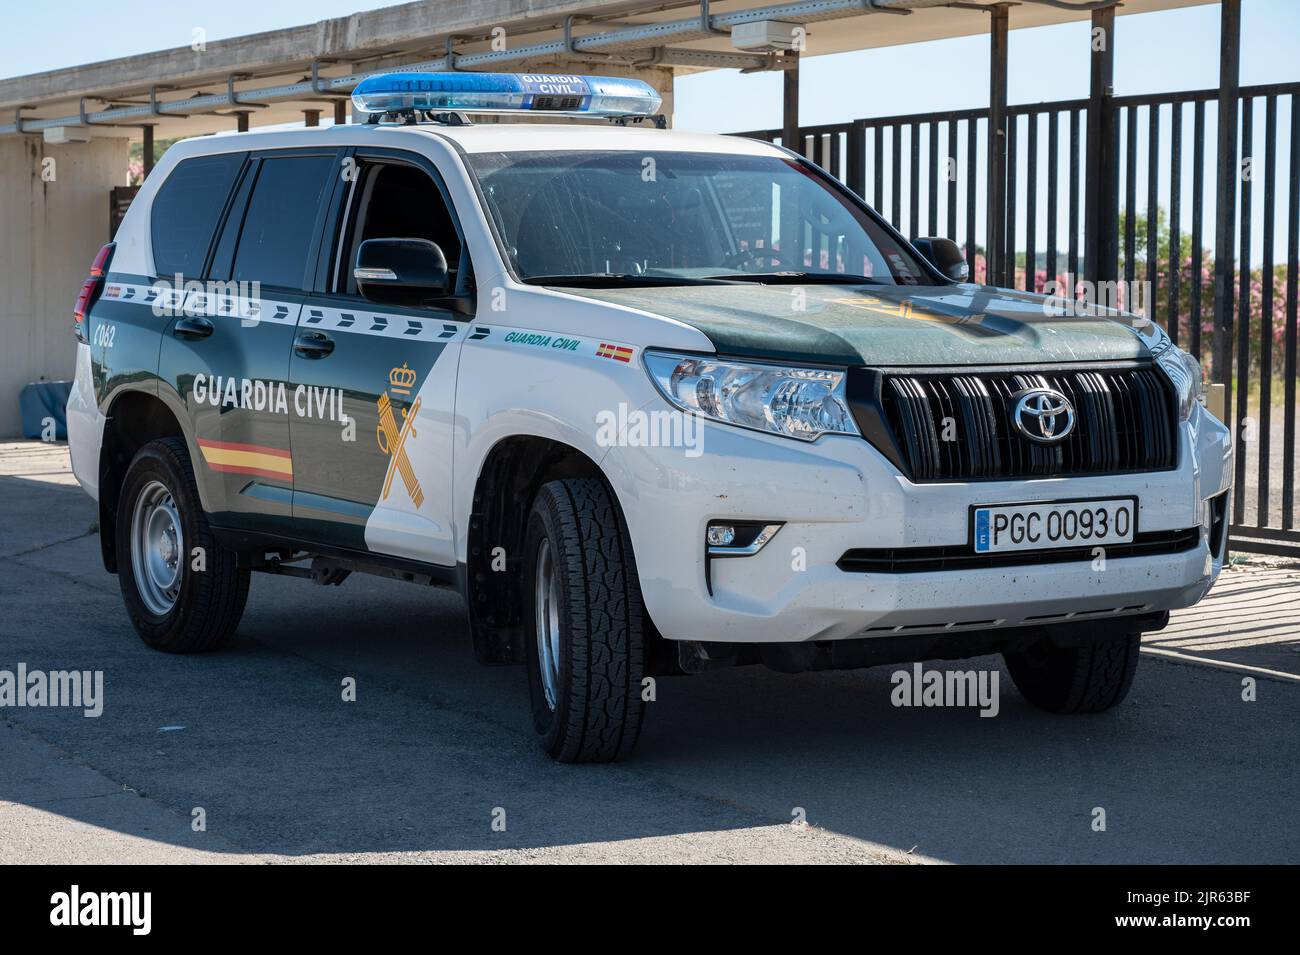 Der Toyota Land Cruiser SUV der spanischen Polizei - Übersetzung eines Textes auf dem Auto: Civil Guard Stockfoto